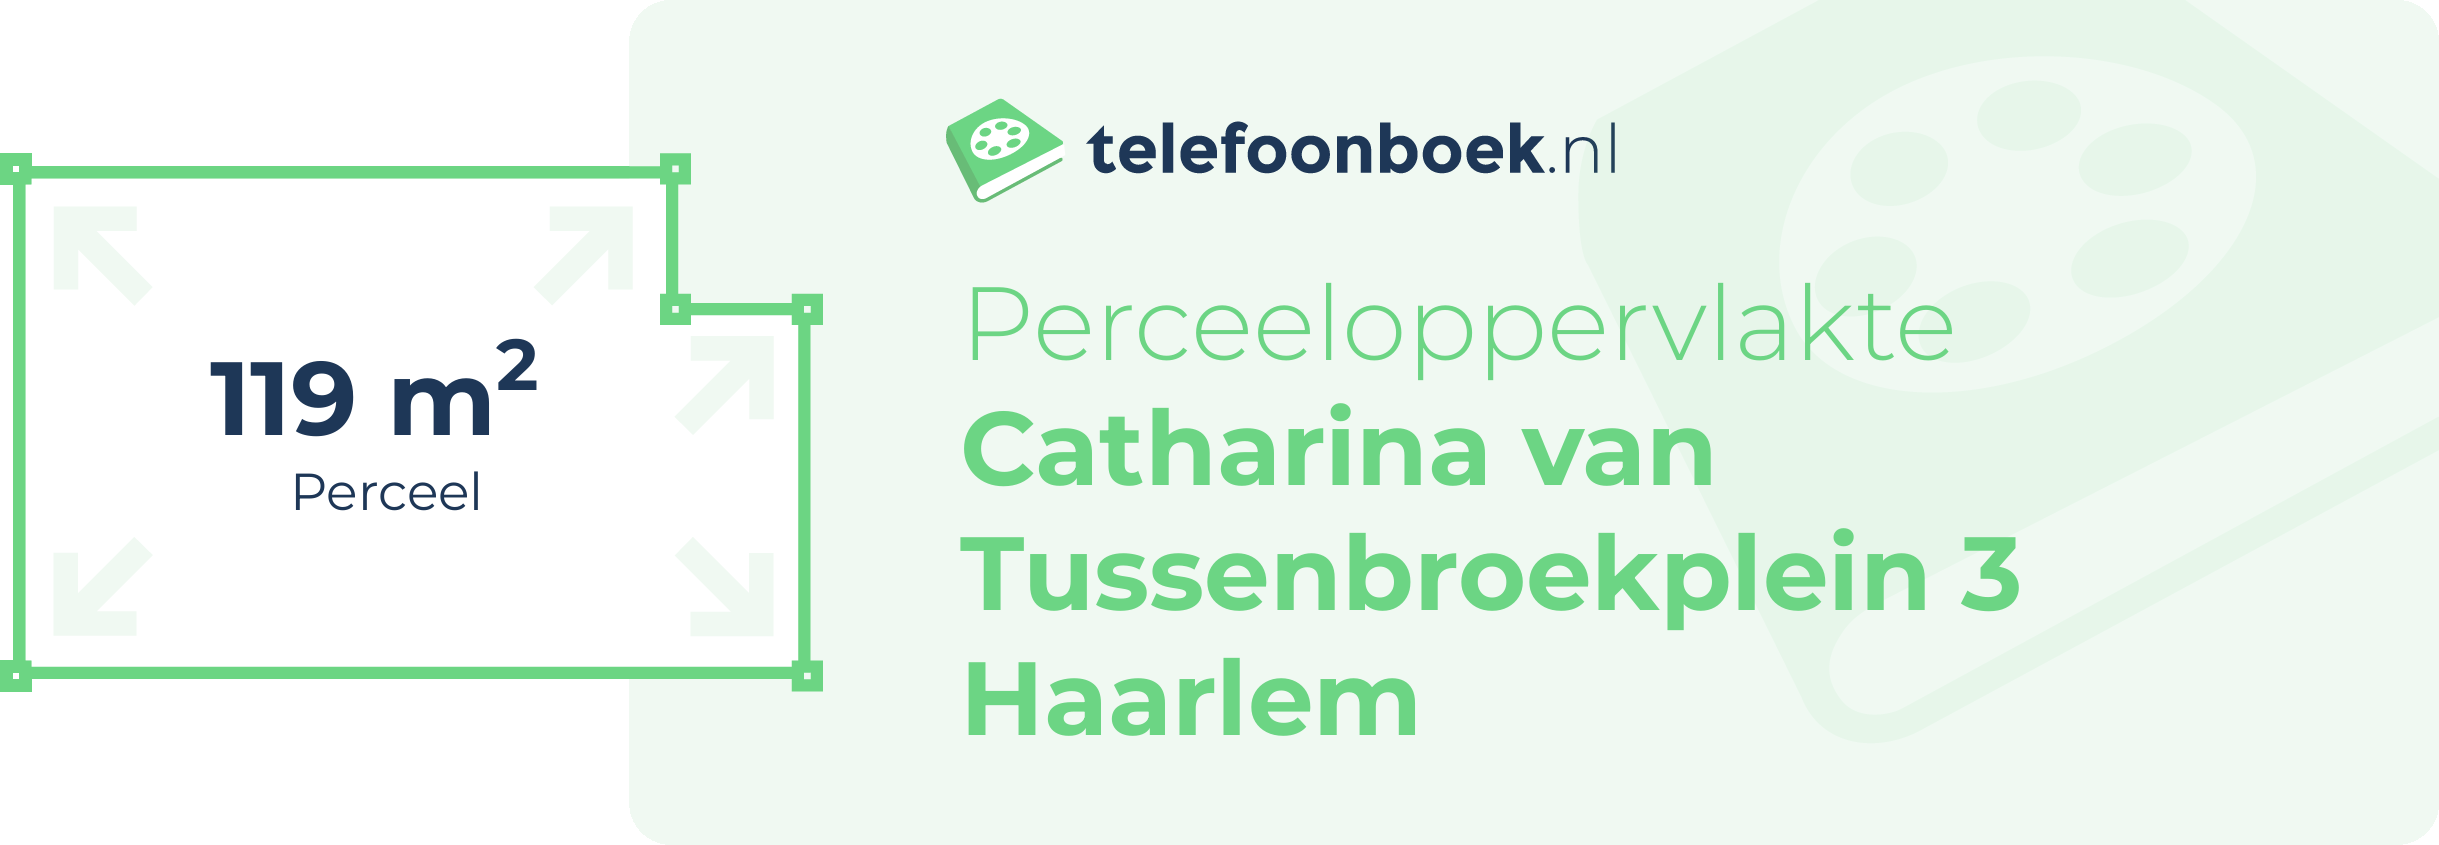 Perceeloppervlakte Catharina Van Tussenbroekplein 3 Haarlem